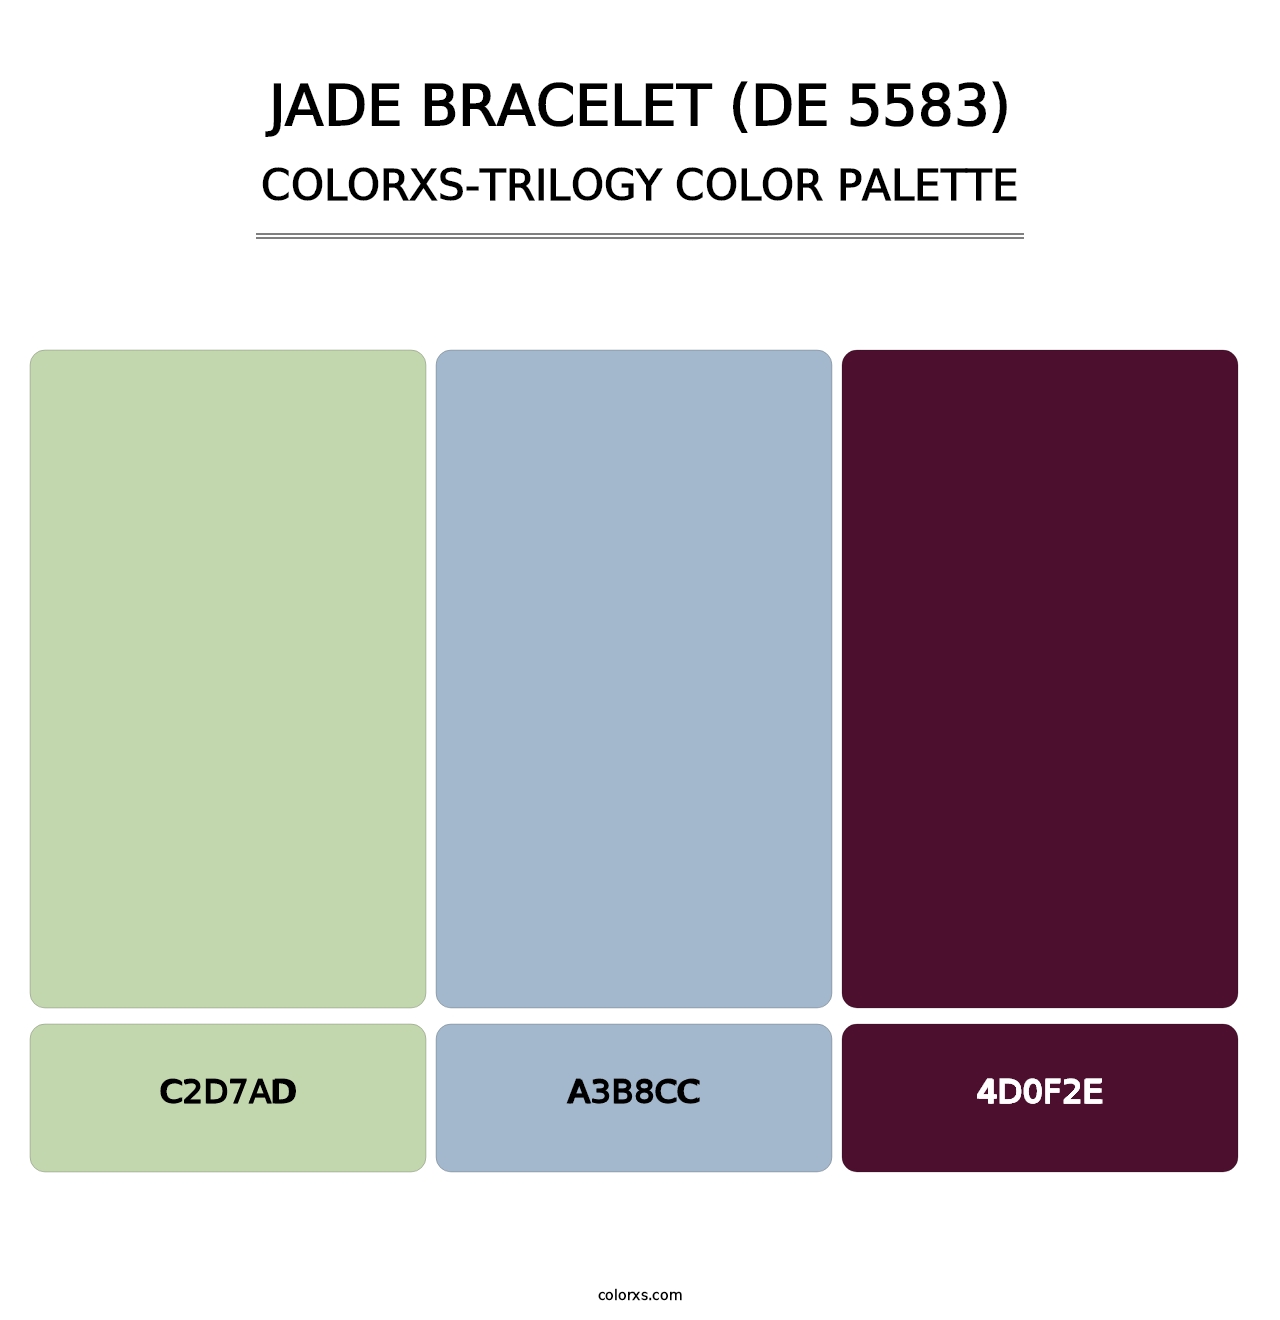 Jade Bracelet (DE 5583) - Colorxs Trilogy Palette